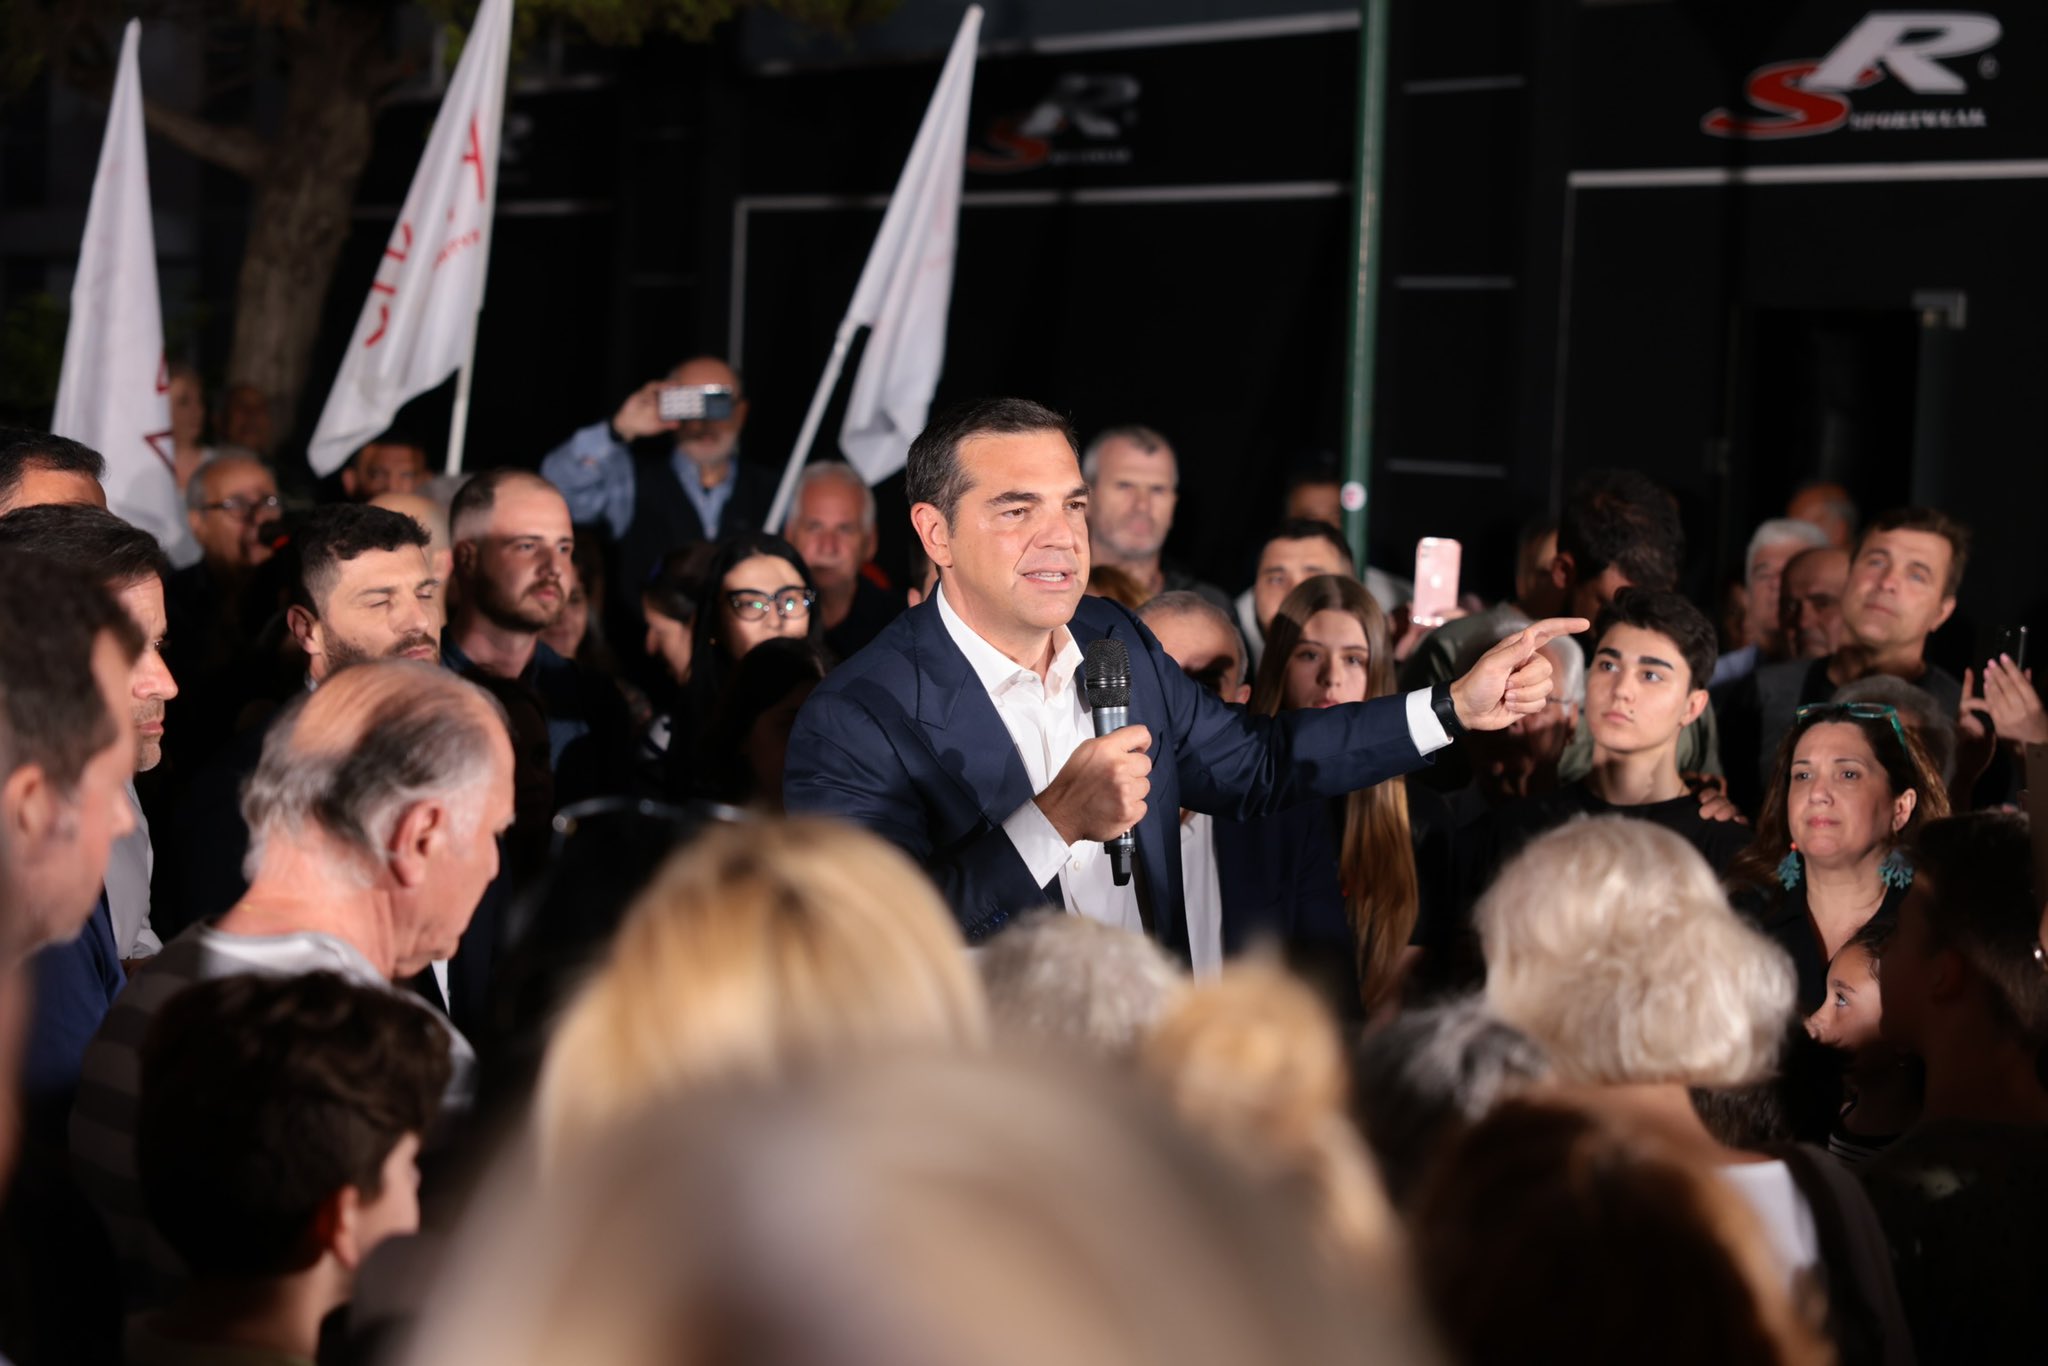 齐普拉斯命令把整个竞选活动的唯一焦点放在作为“克里斯玛型领袖”的自己上。//图片来源：Alexis Tsipras, Twitter